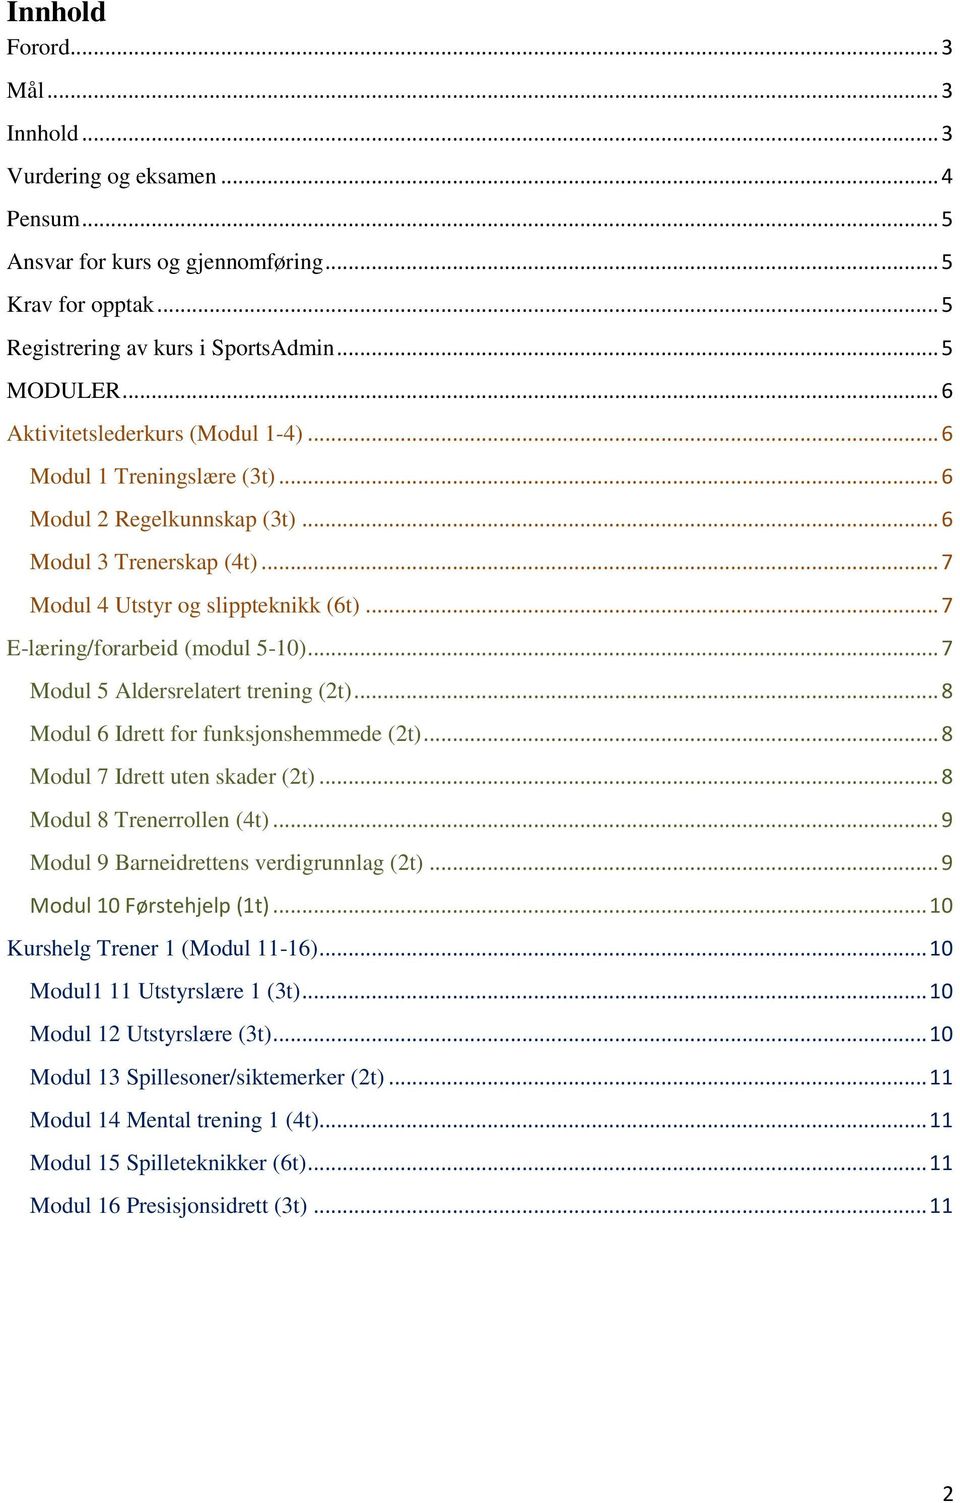 .. 7 E-læring/forarbeid (modul 5-10)... 7 Modul 5 Aldersrelatert trening (2t)... 8 Modul 6 Idrett for funksjonshemmede (2t)... 8 Modul 7 Idrett uten skader (2t)... 8 Modul 8 Trenerrollen (4t).